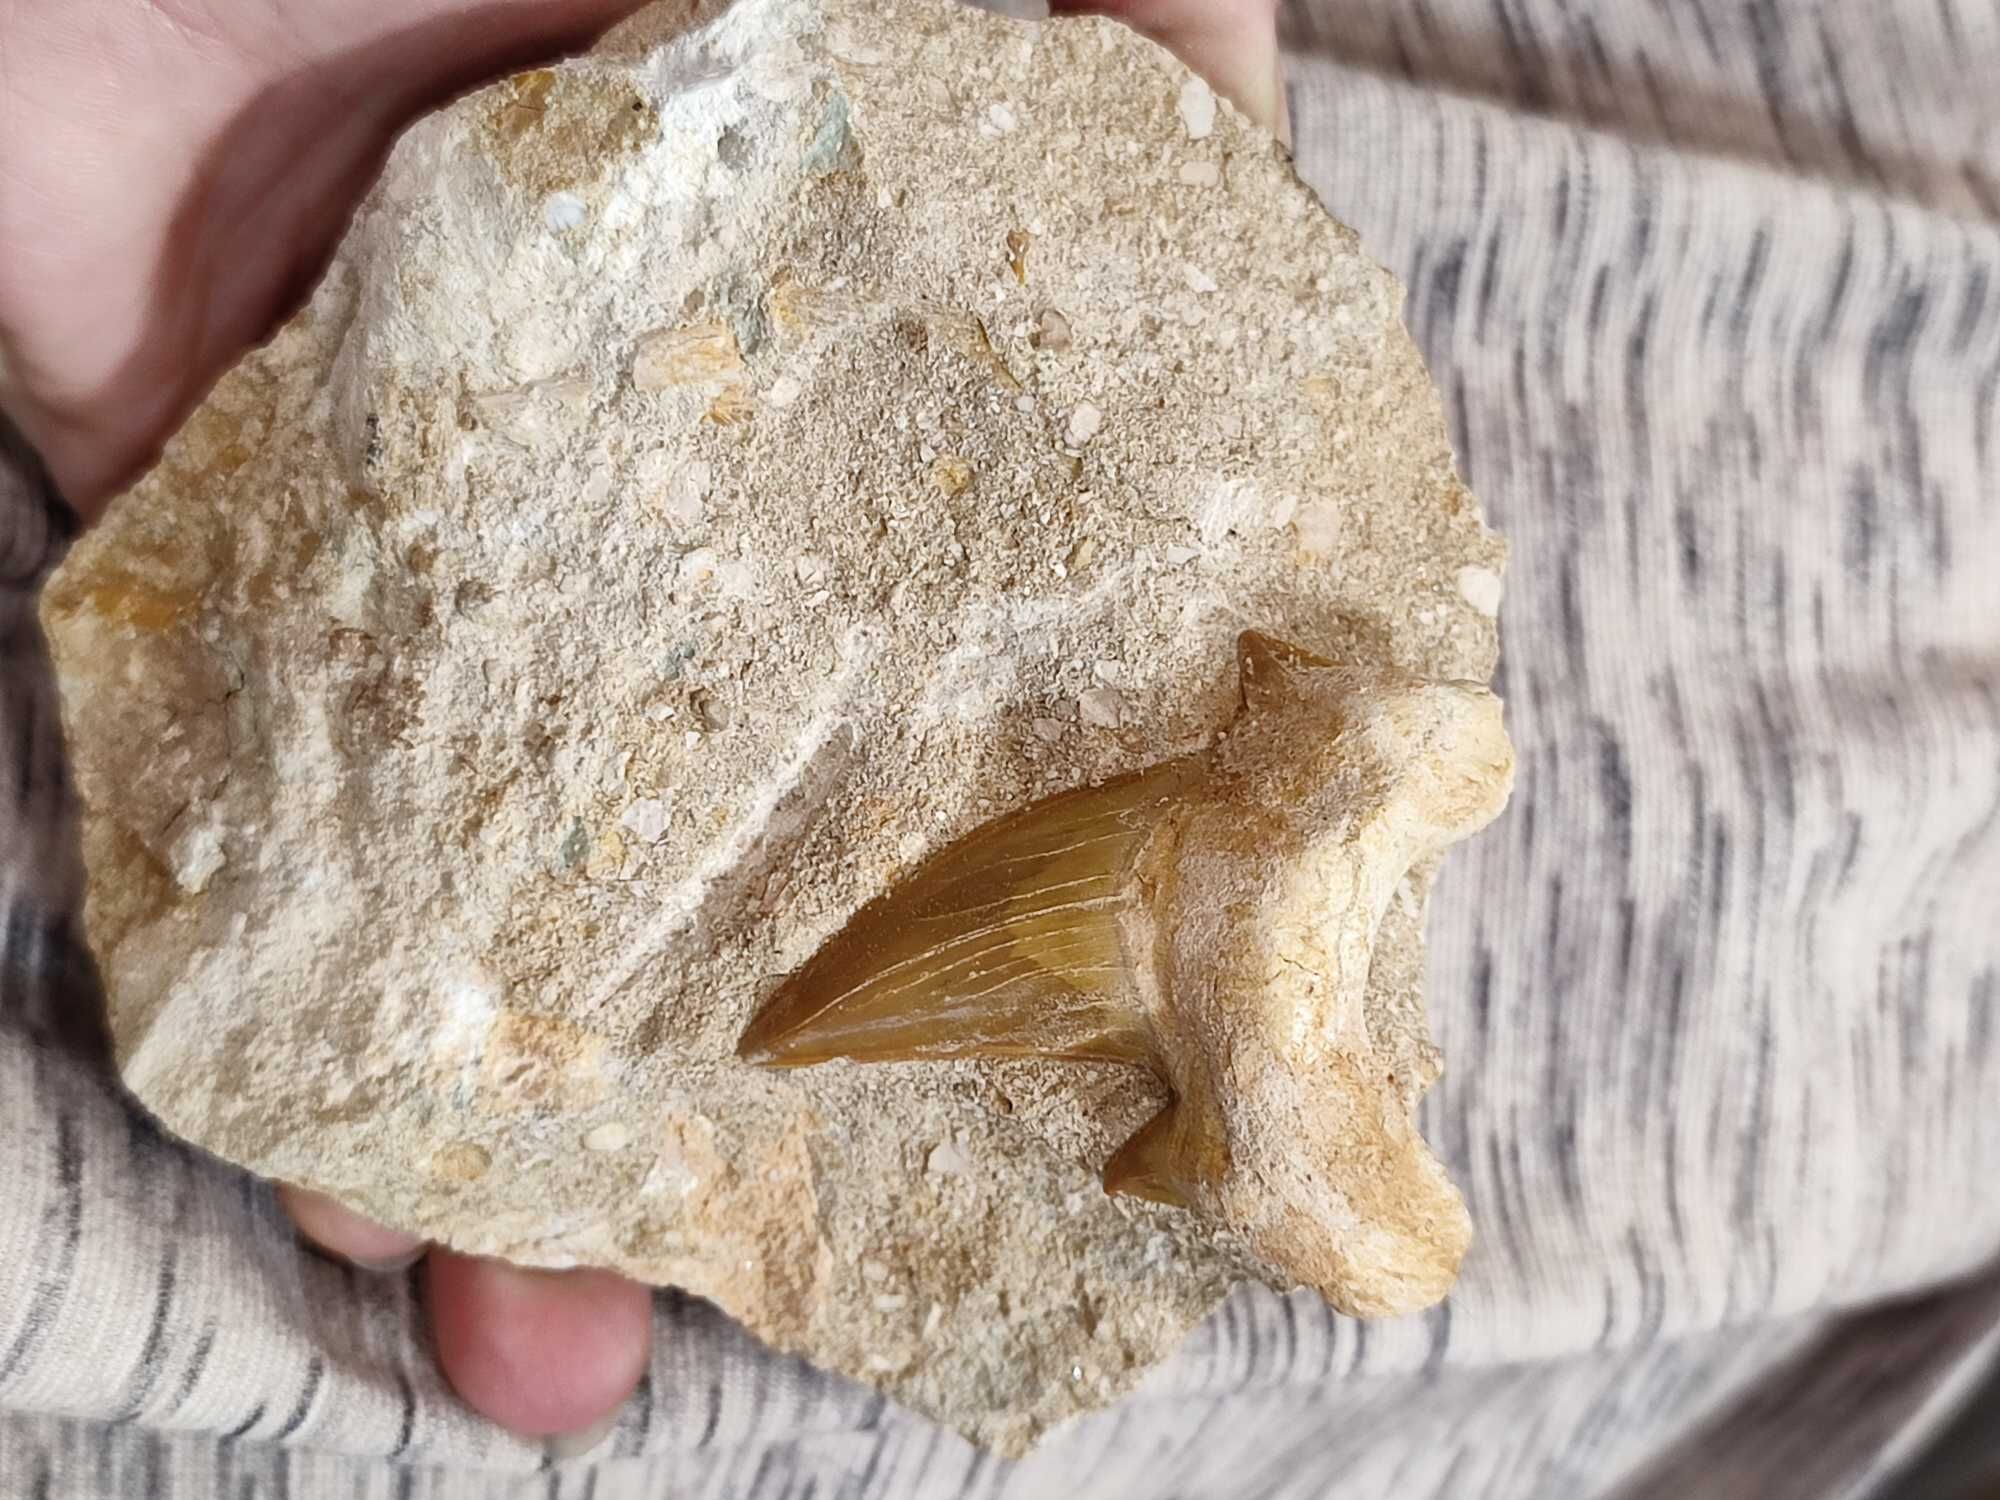 Ząb rekina. Maroko. skamieniałości minerał do kolekcji